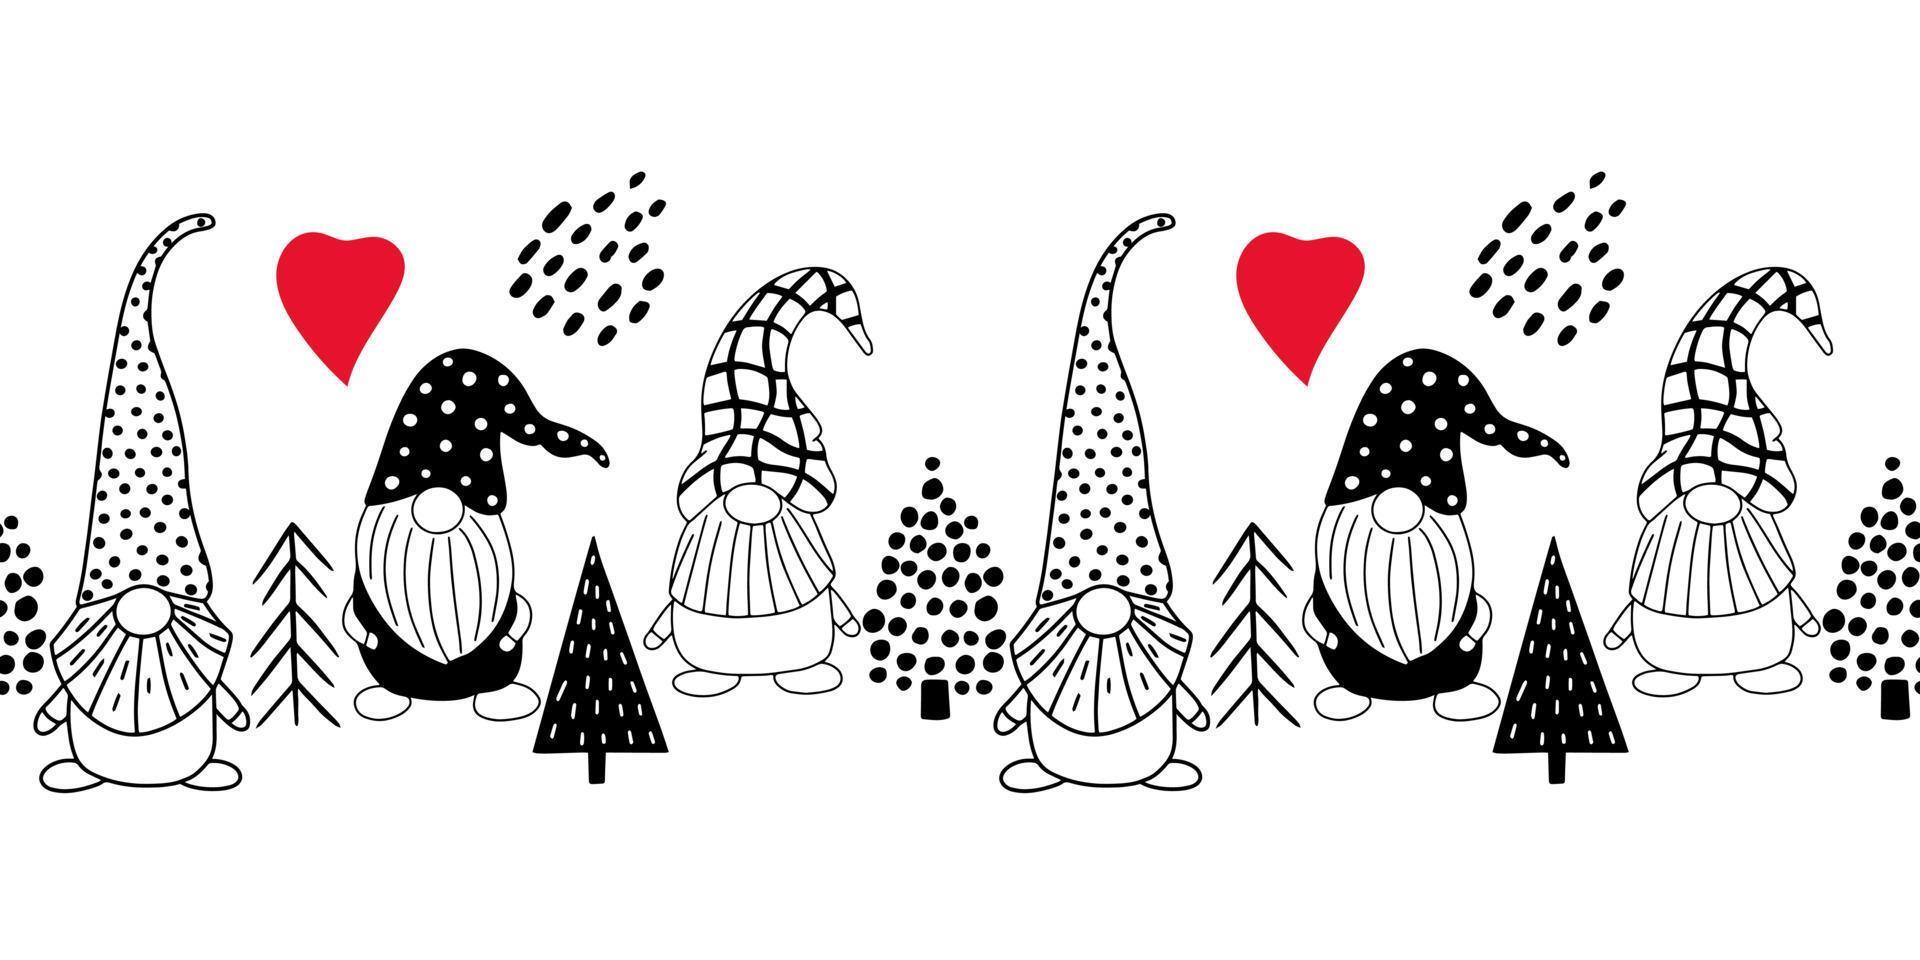 naadloos horizontaal patroon met schattige handgetekende kabouters en kerstbomen. een scandinavische stijl vector achtergrond van doodle elementen